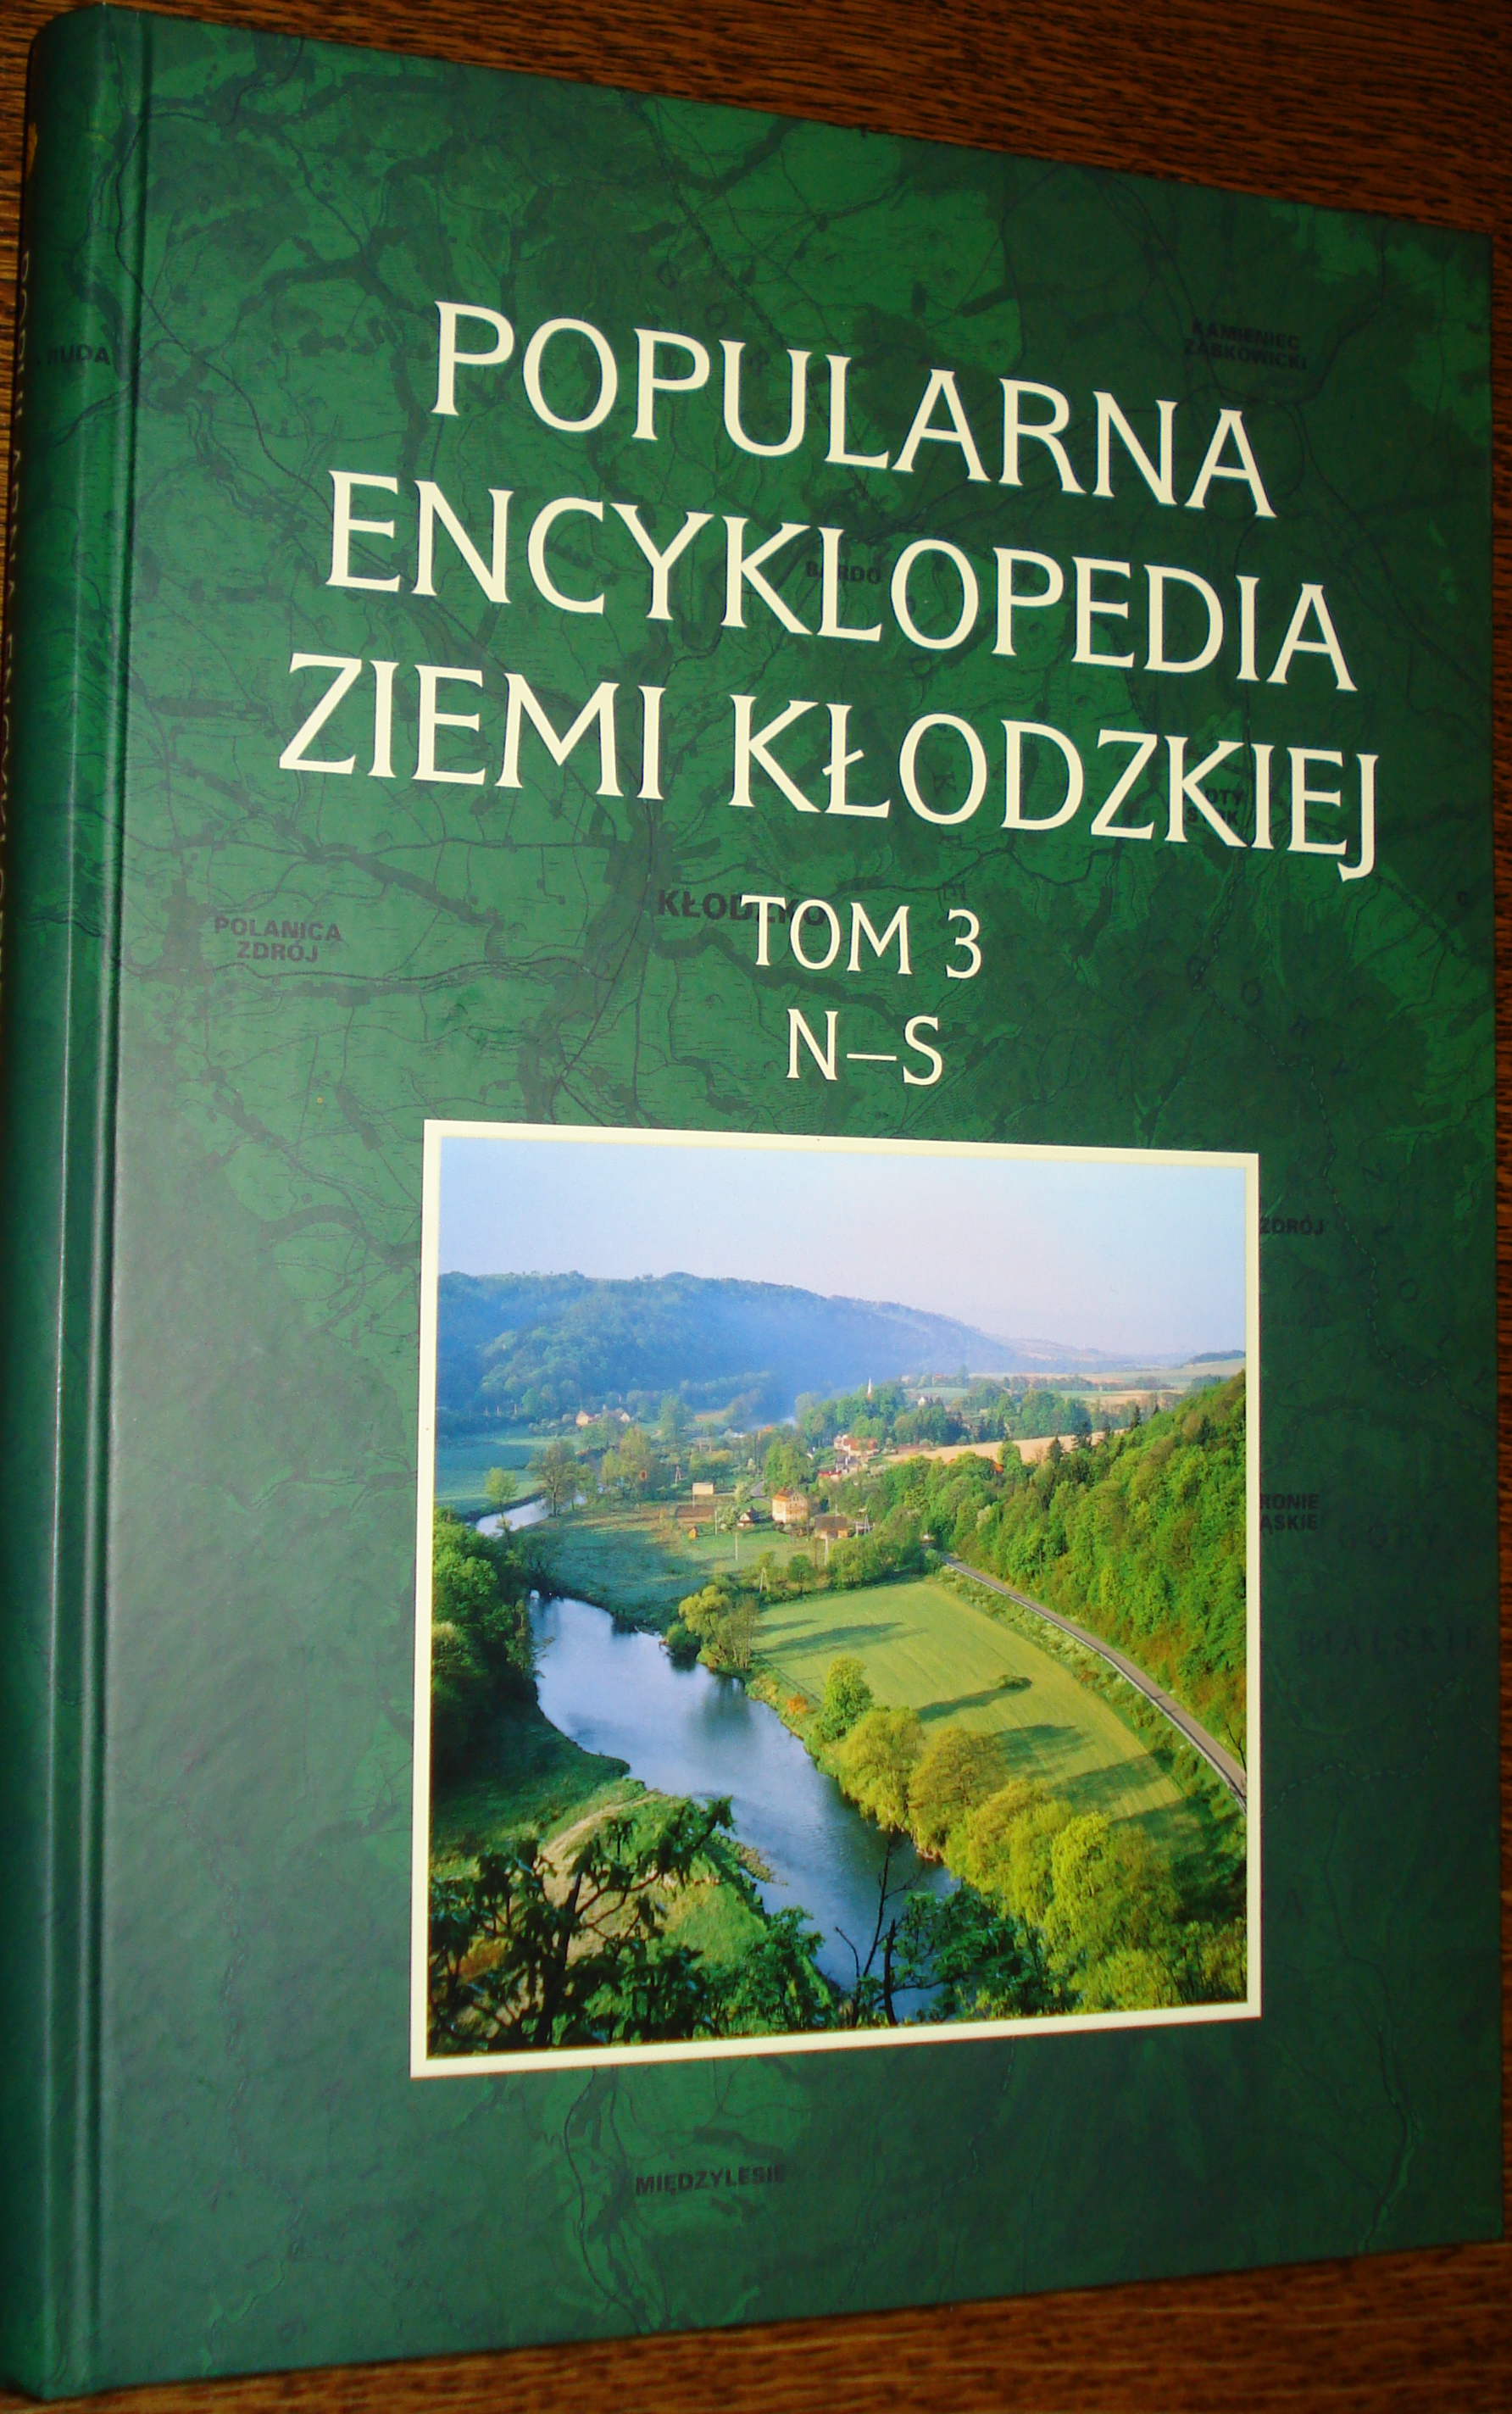 III tom Popularnej Encyklopedii Ziemi Kłodzkiej już jest! - Zdjęcie główne